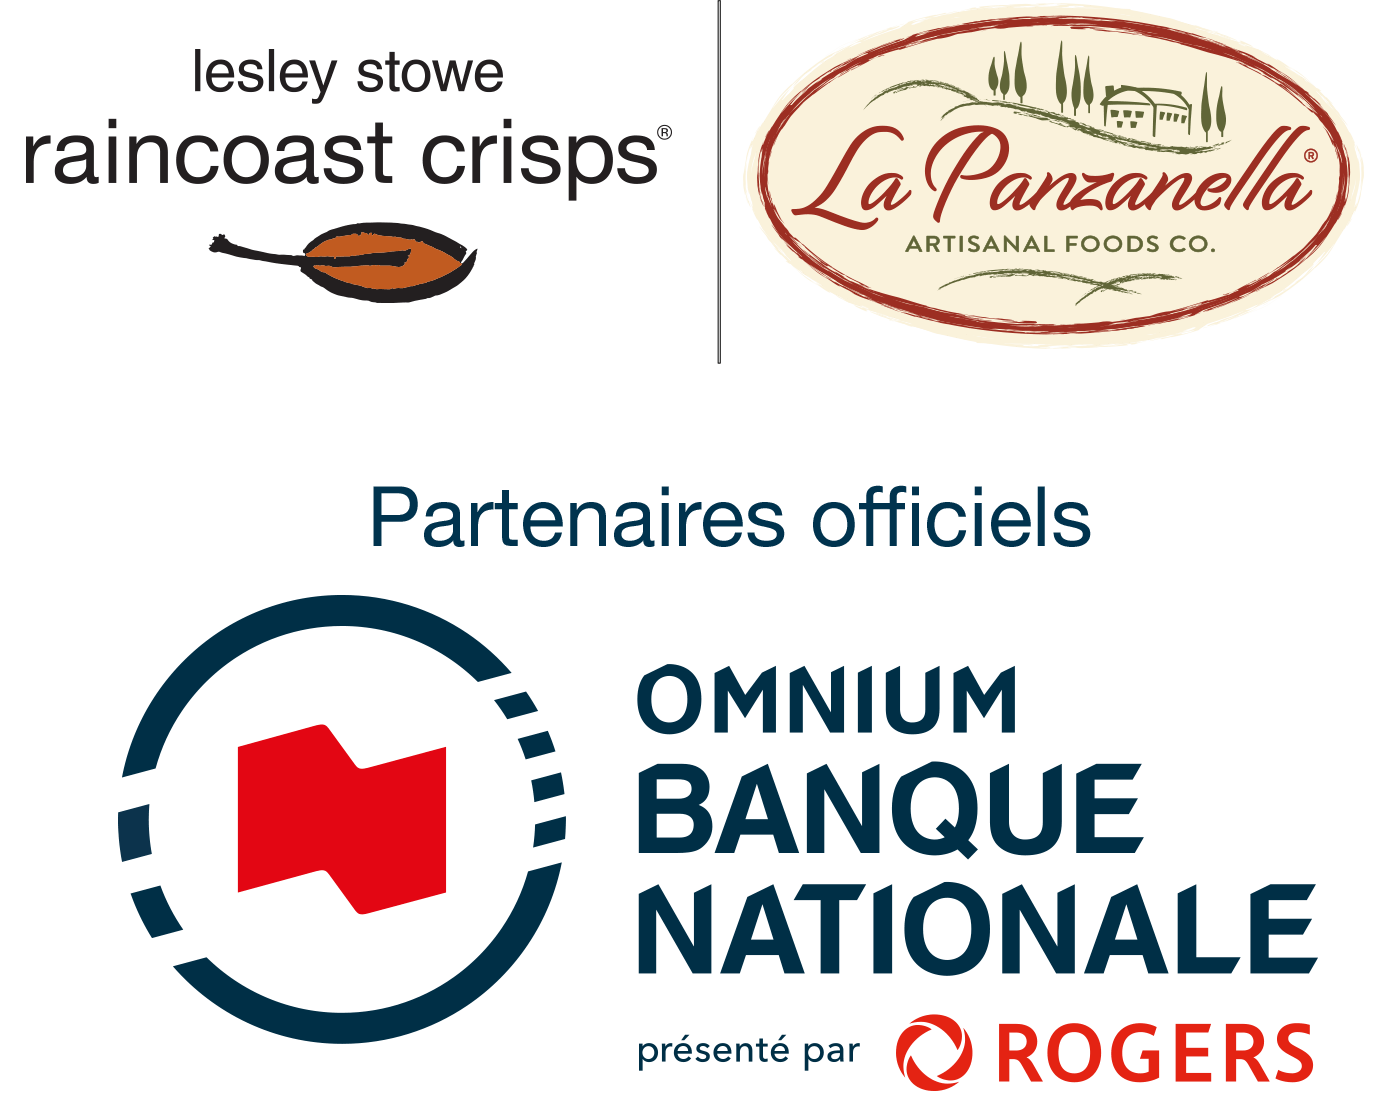 Lesley Stowe Raincoast chips & La Panzanella sont partenaires officiels de l'Omnium Banque Nationale présenté par Rogers 